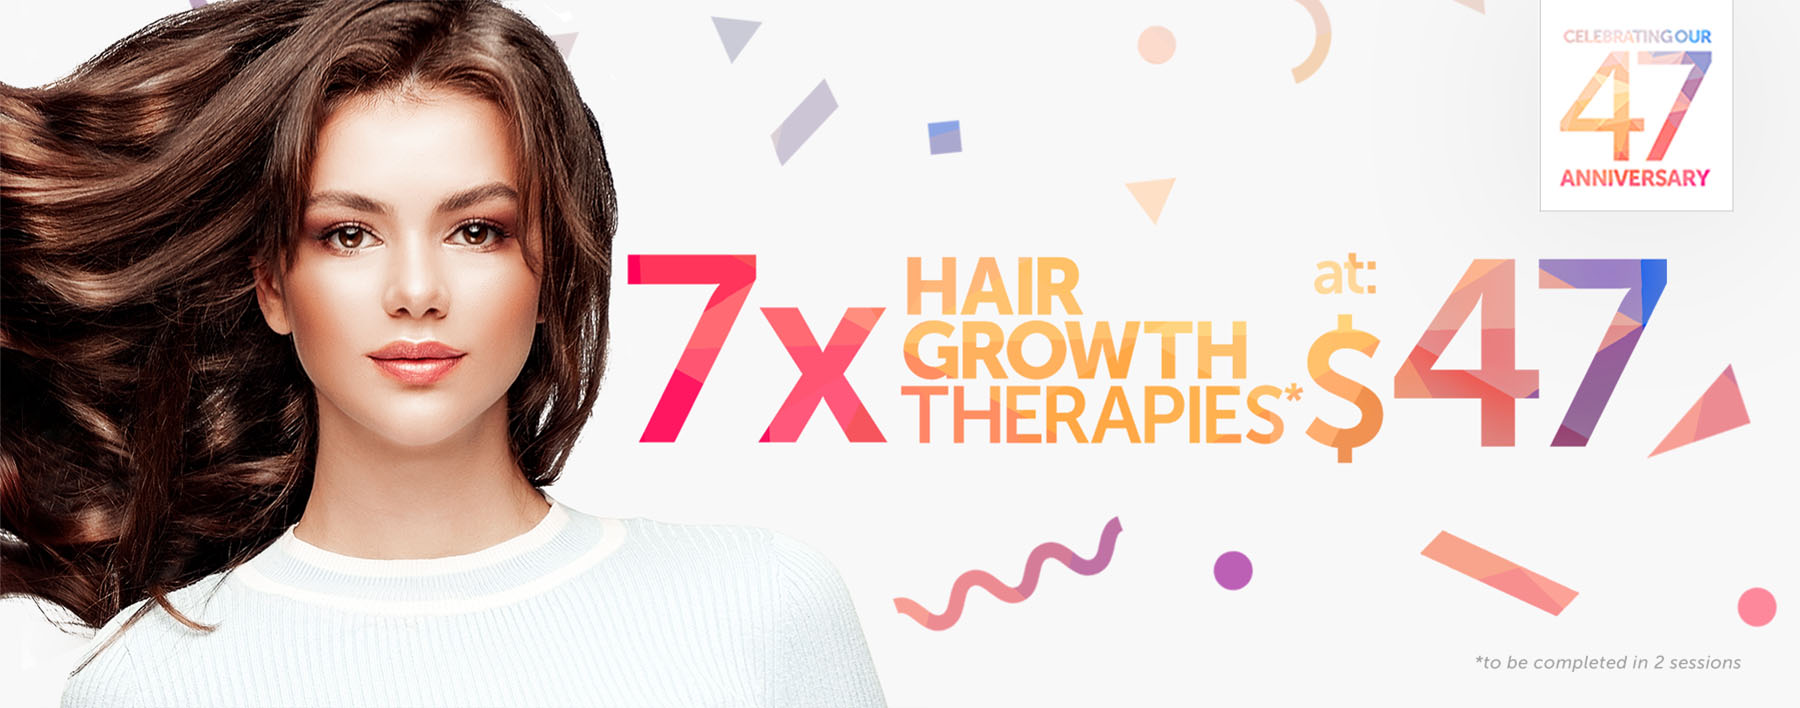 7 Hair Growth Therapies at $47